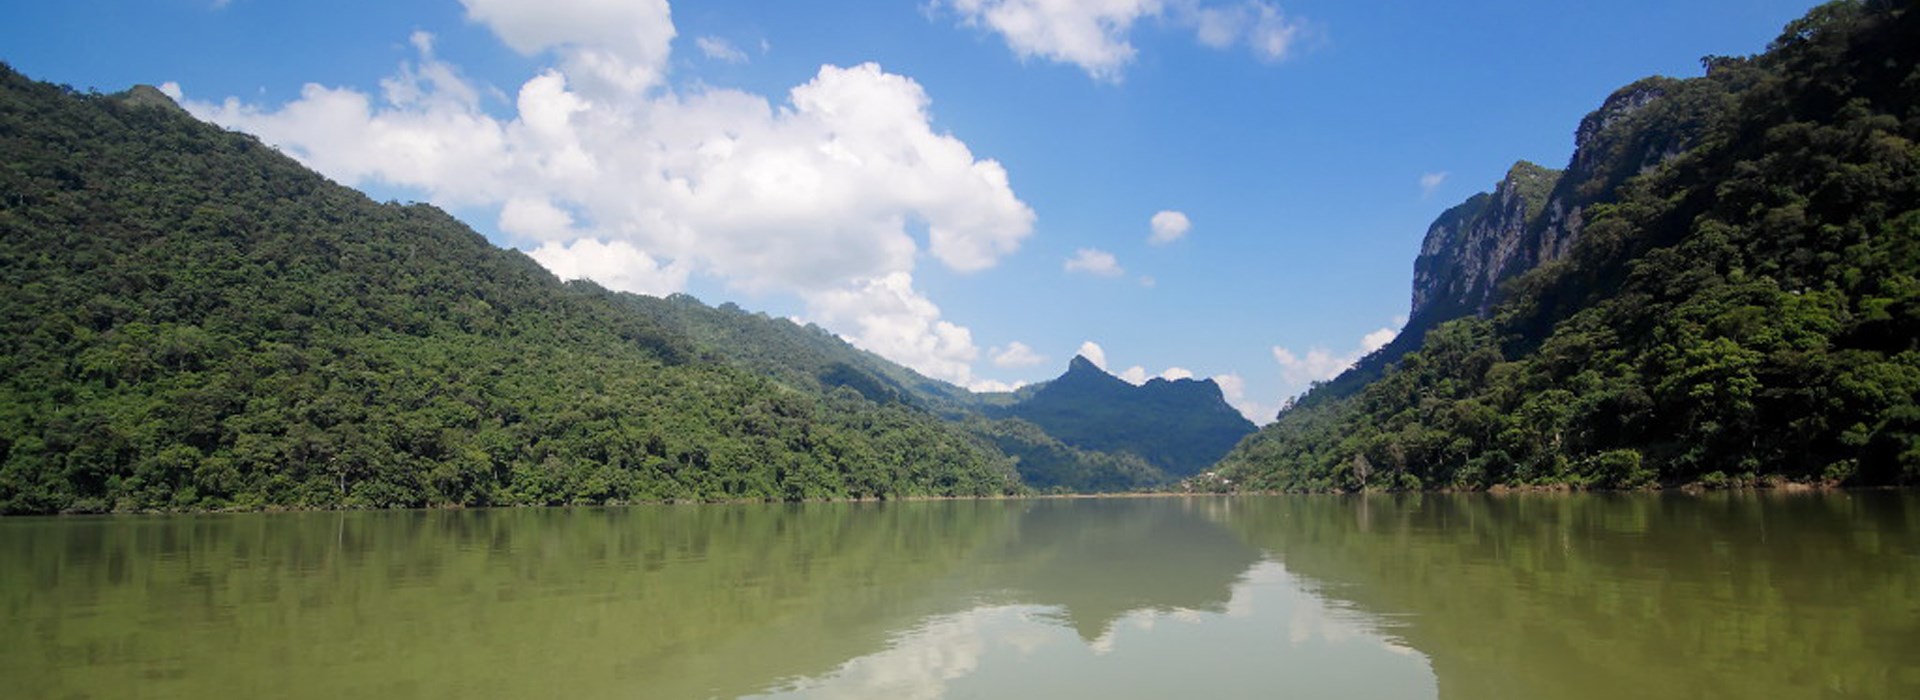 Visiter Le Parc National de Ba Be - Vietnam